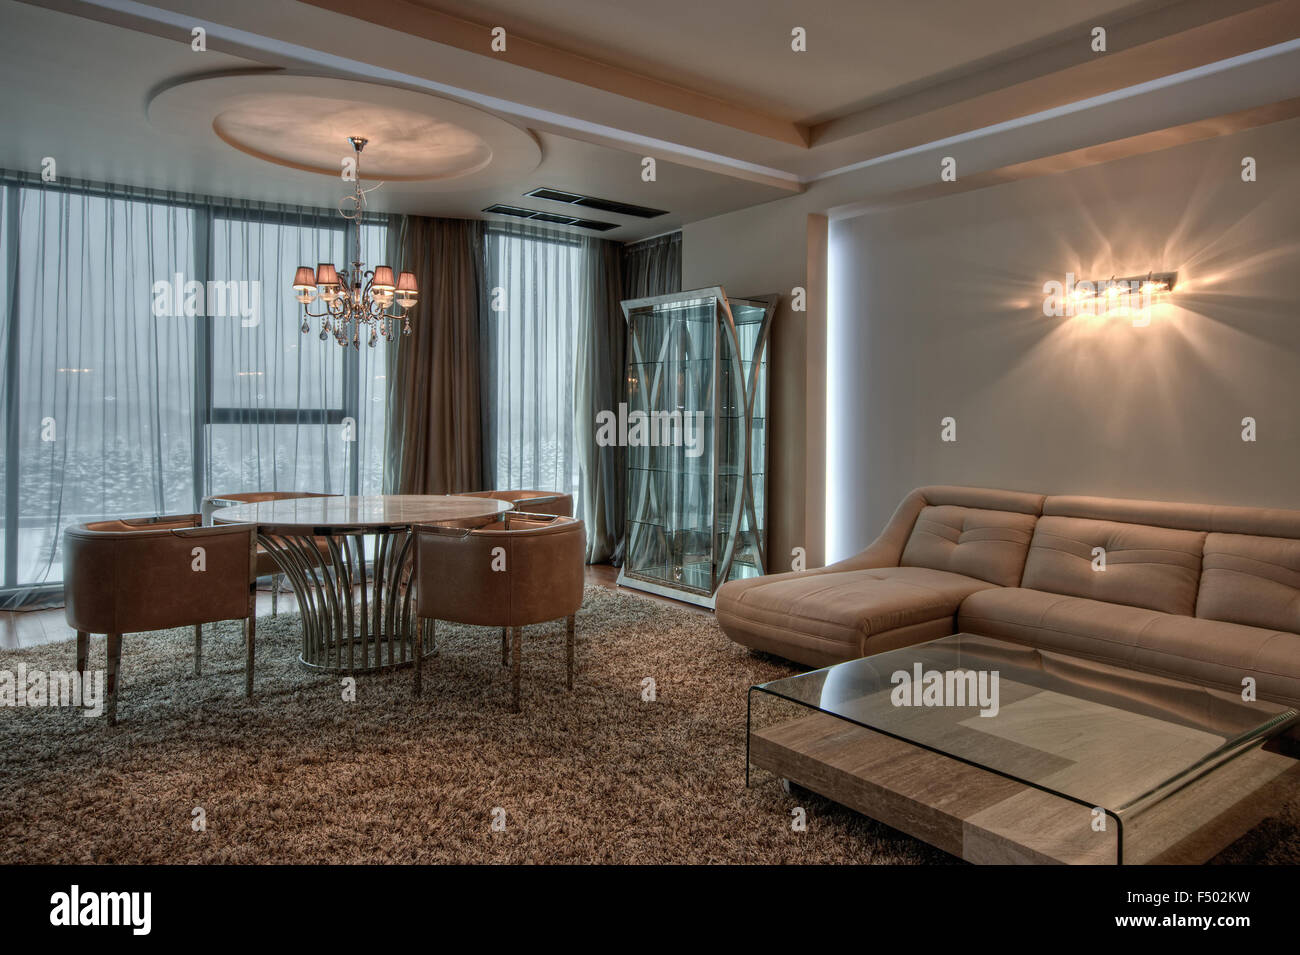 Moderno y elegante decoración y ambiente acogedor interior de diseño contemporáneo minimalista Foto de stock